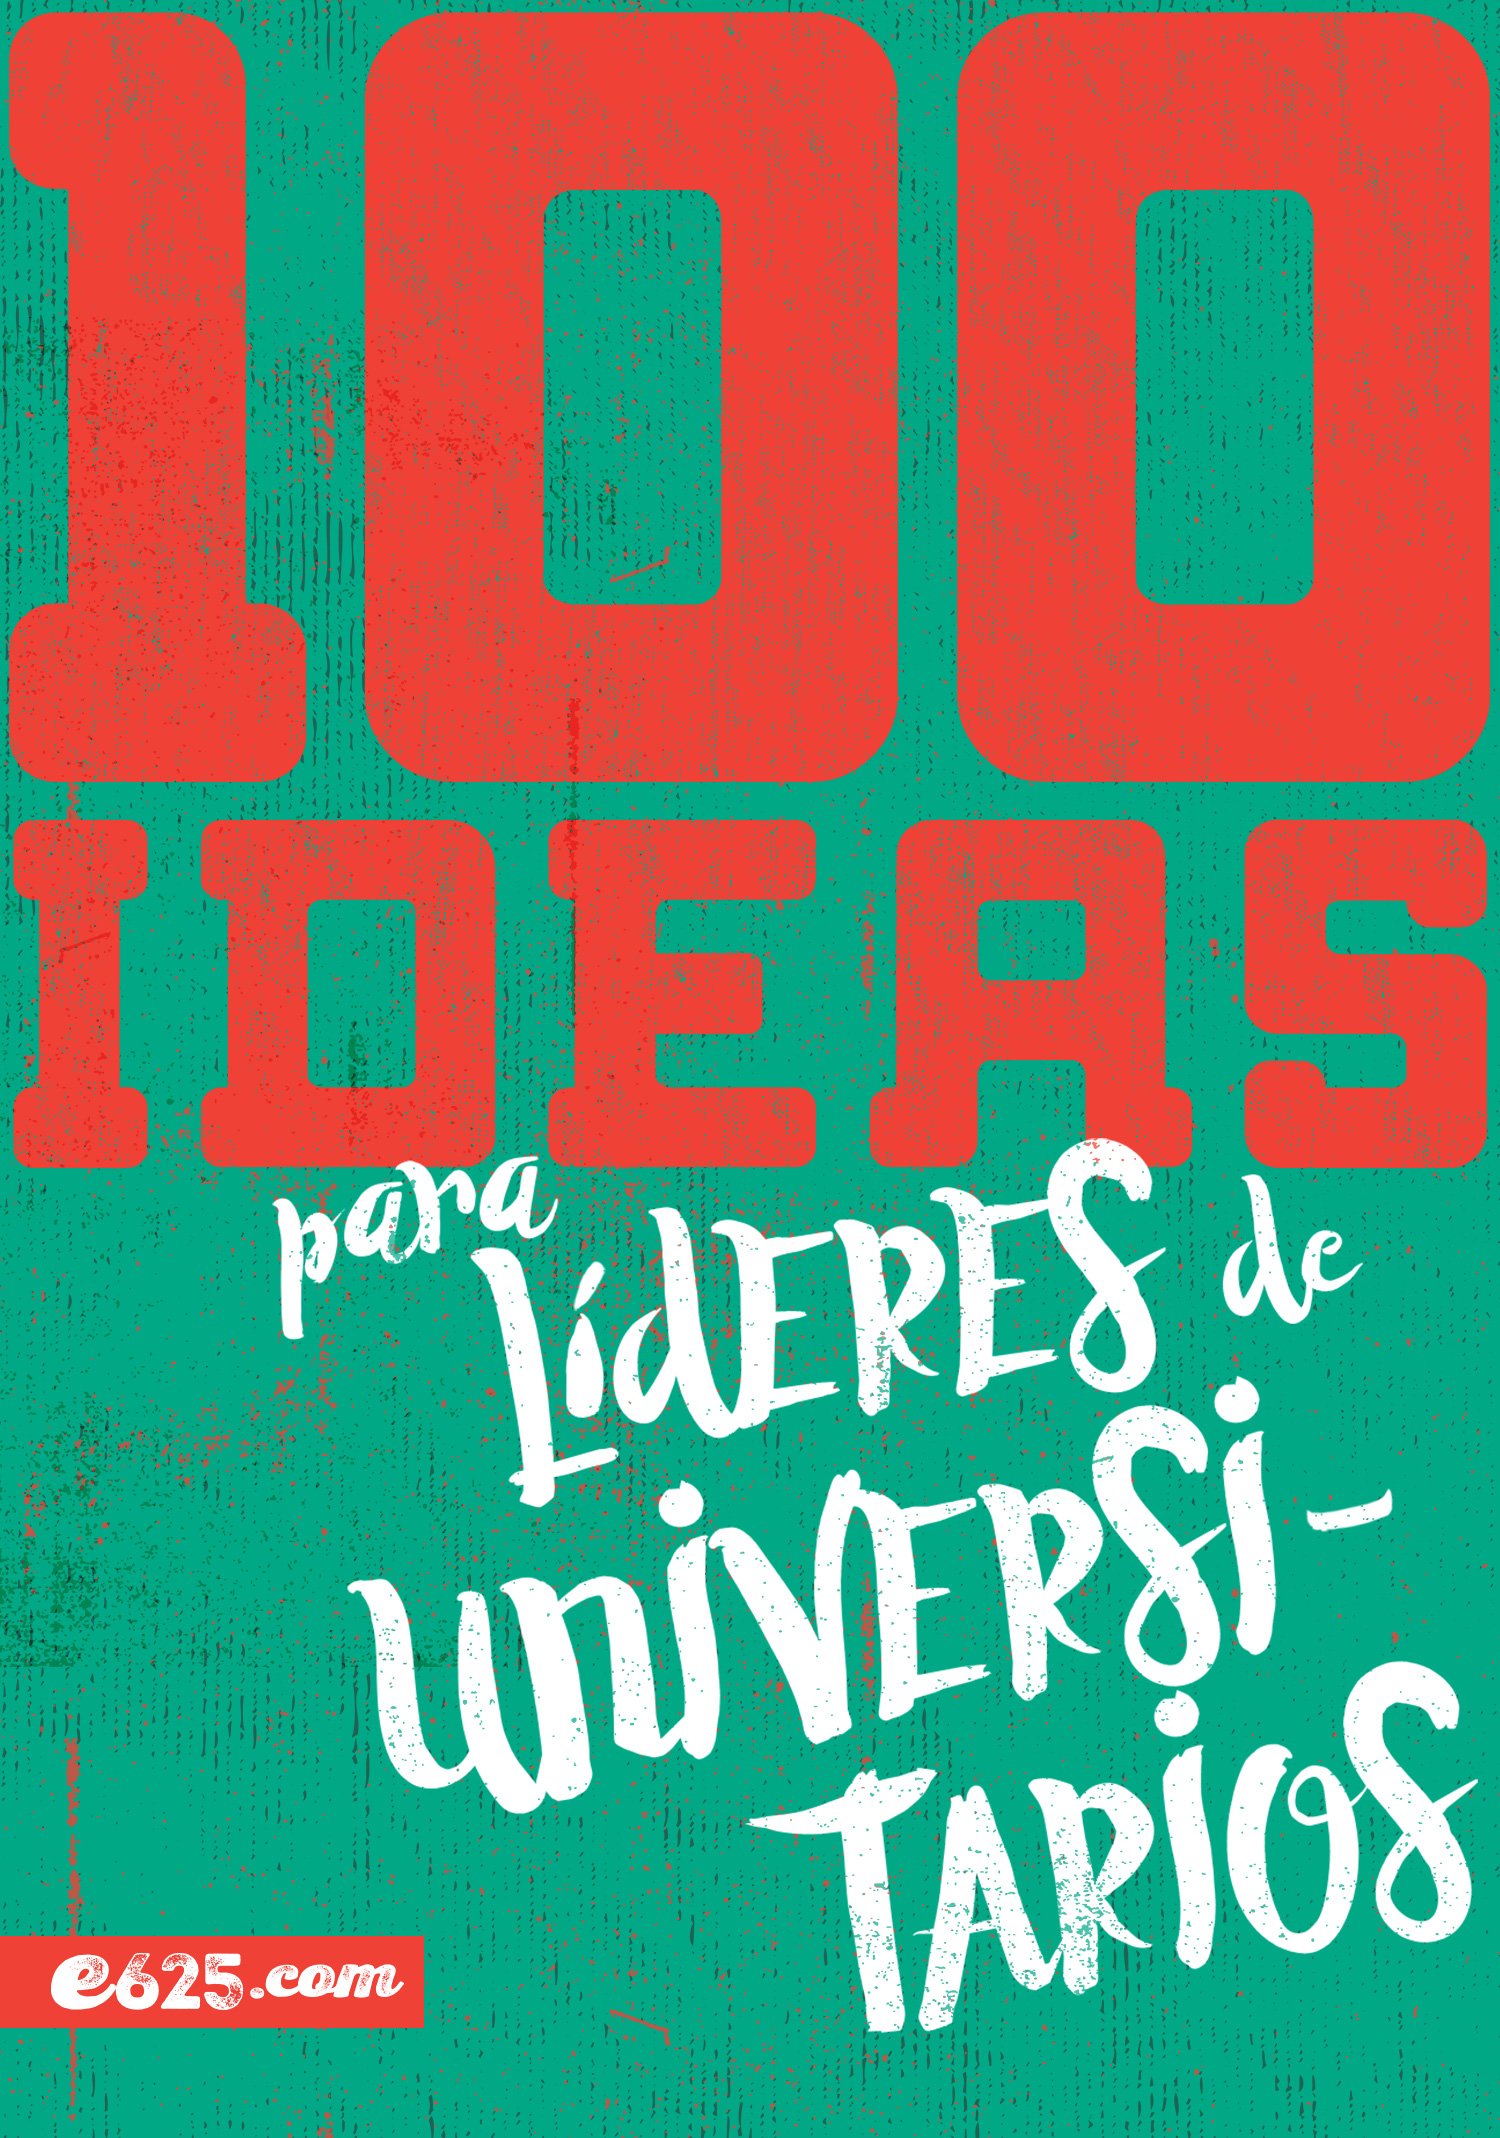 100 Ideas Para Líderes de Universarios